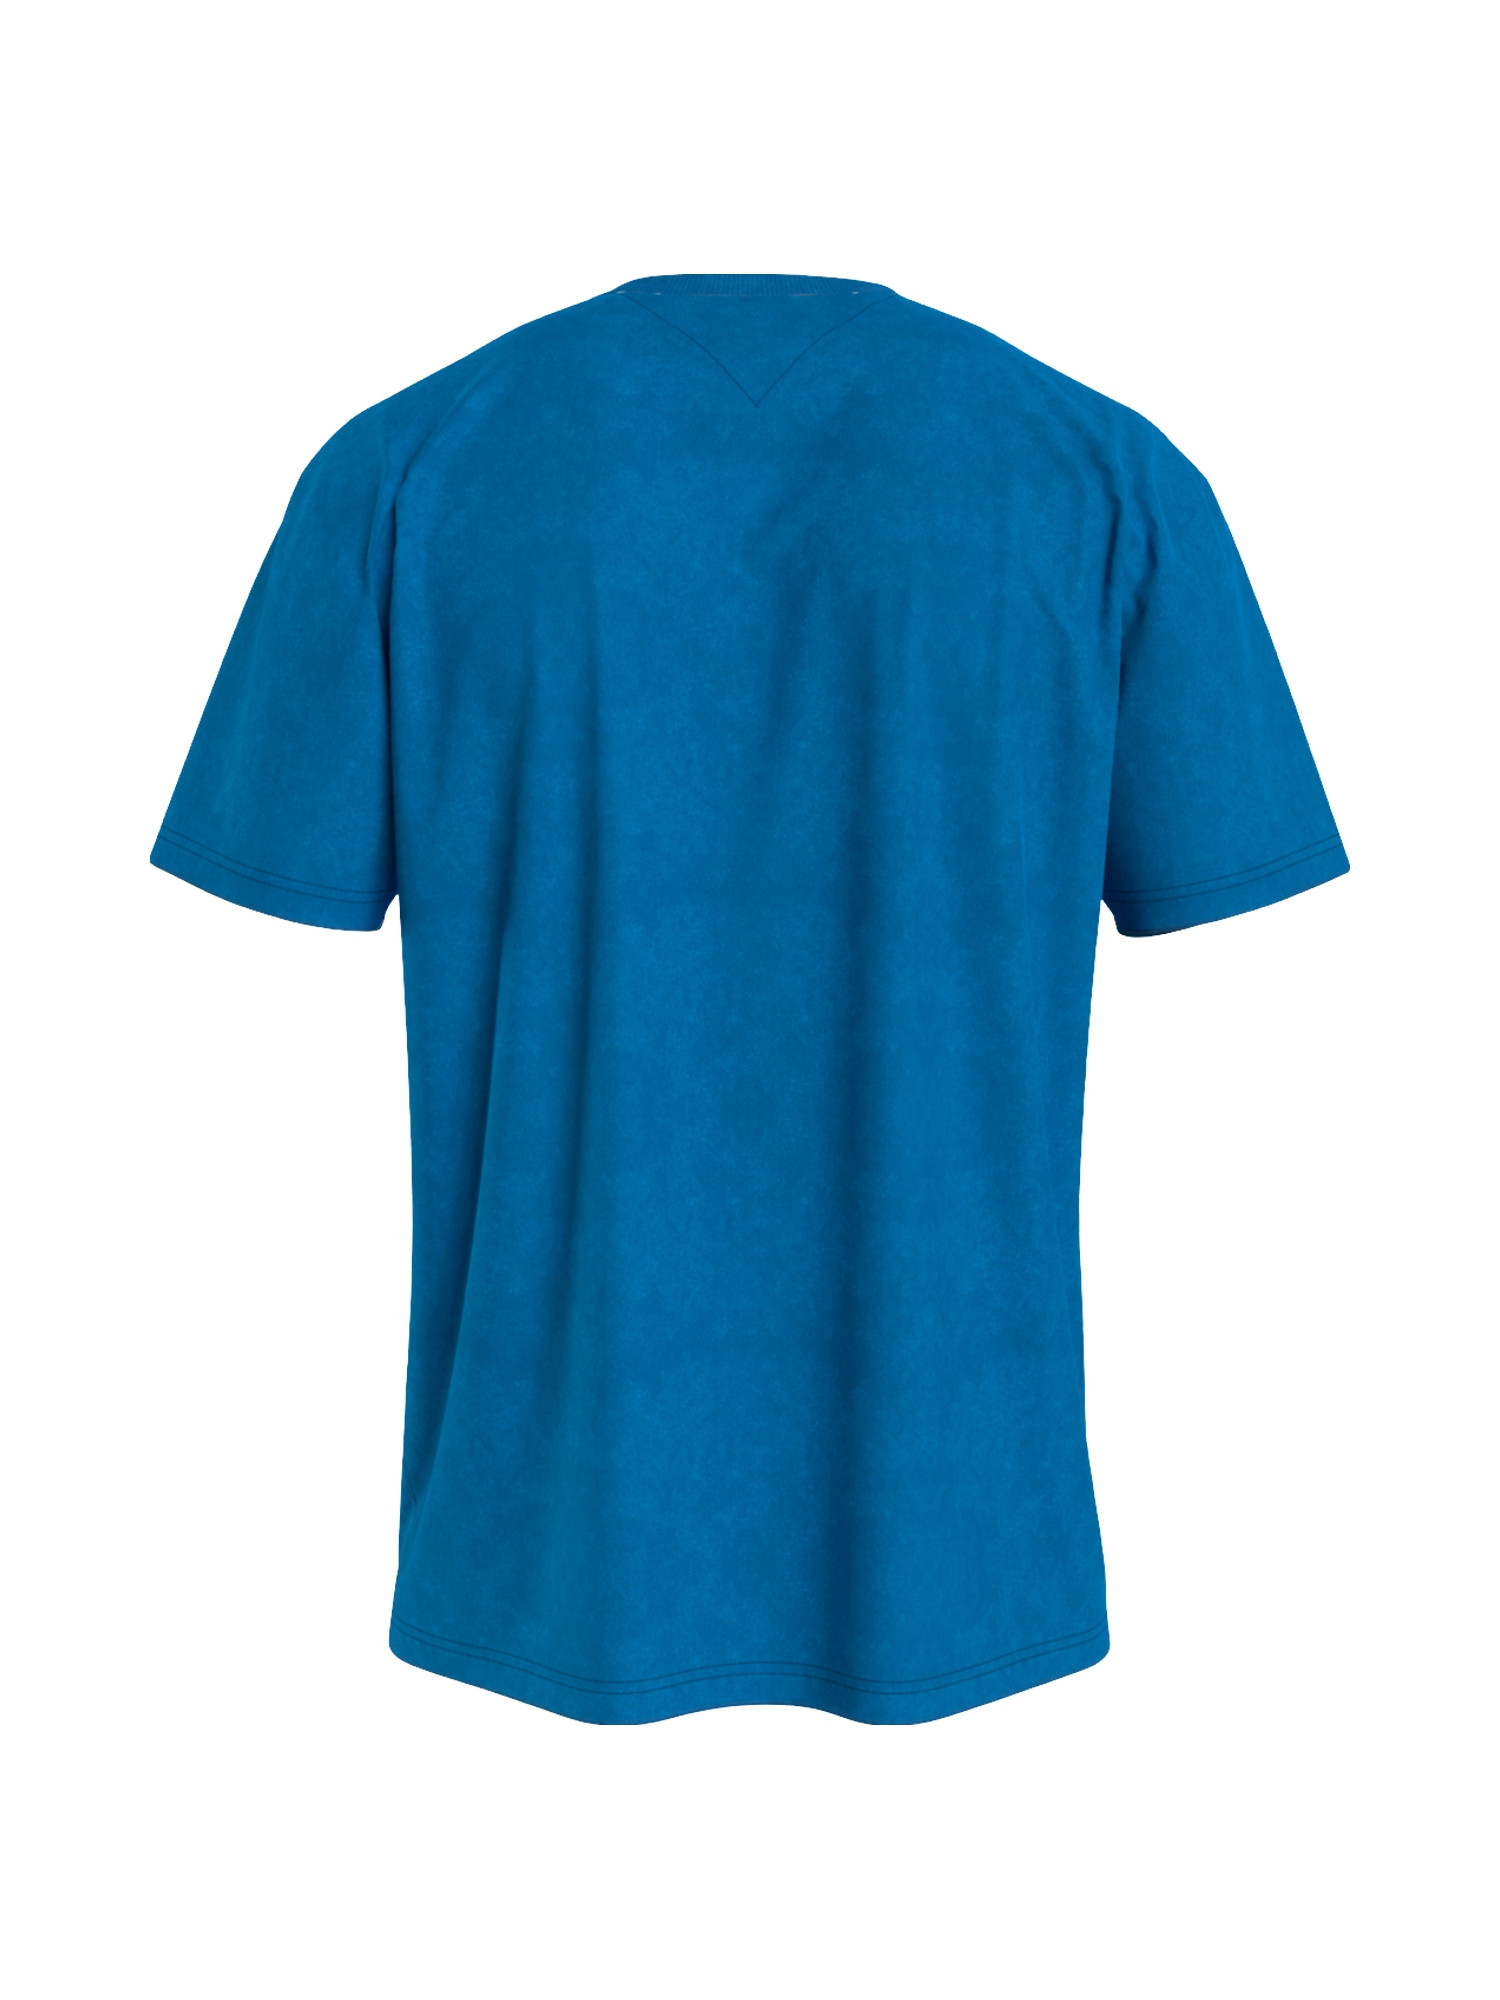 T-shirt con logo, Azzurro, large image number 1